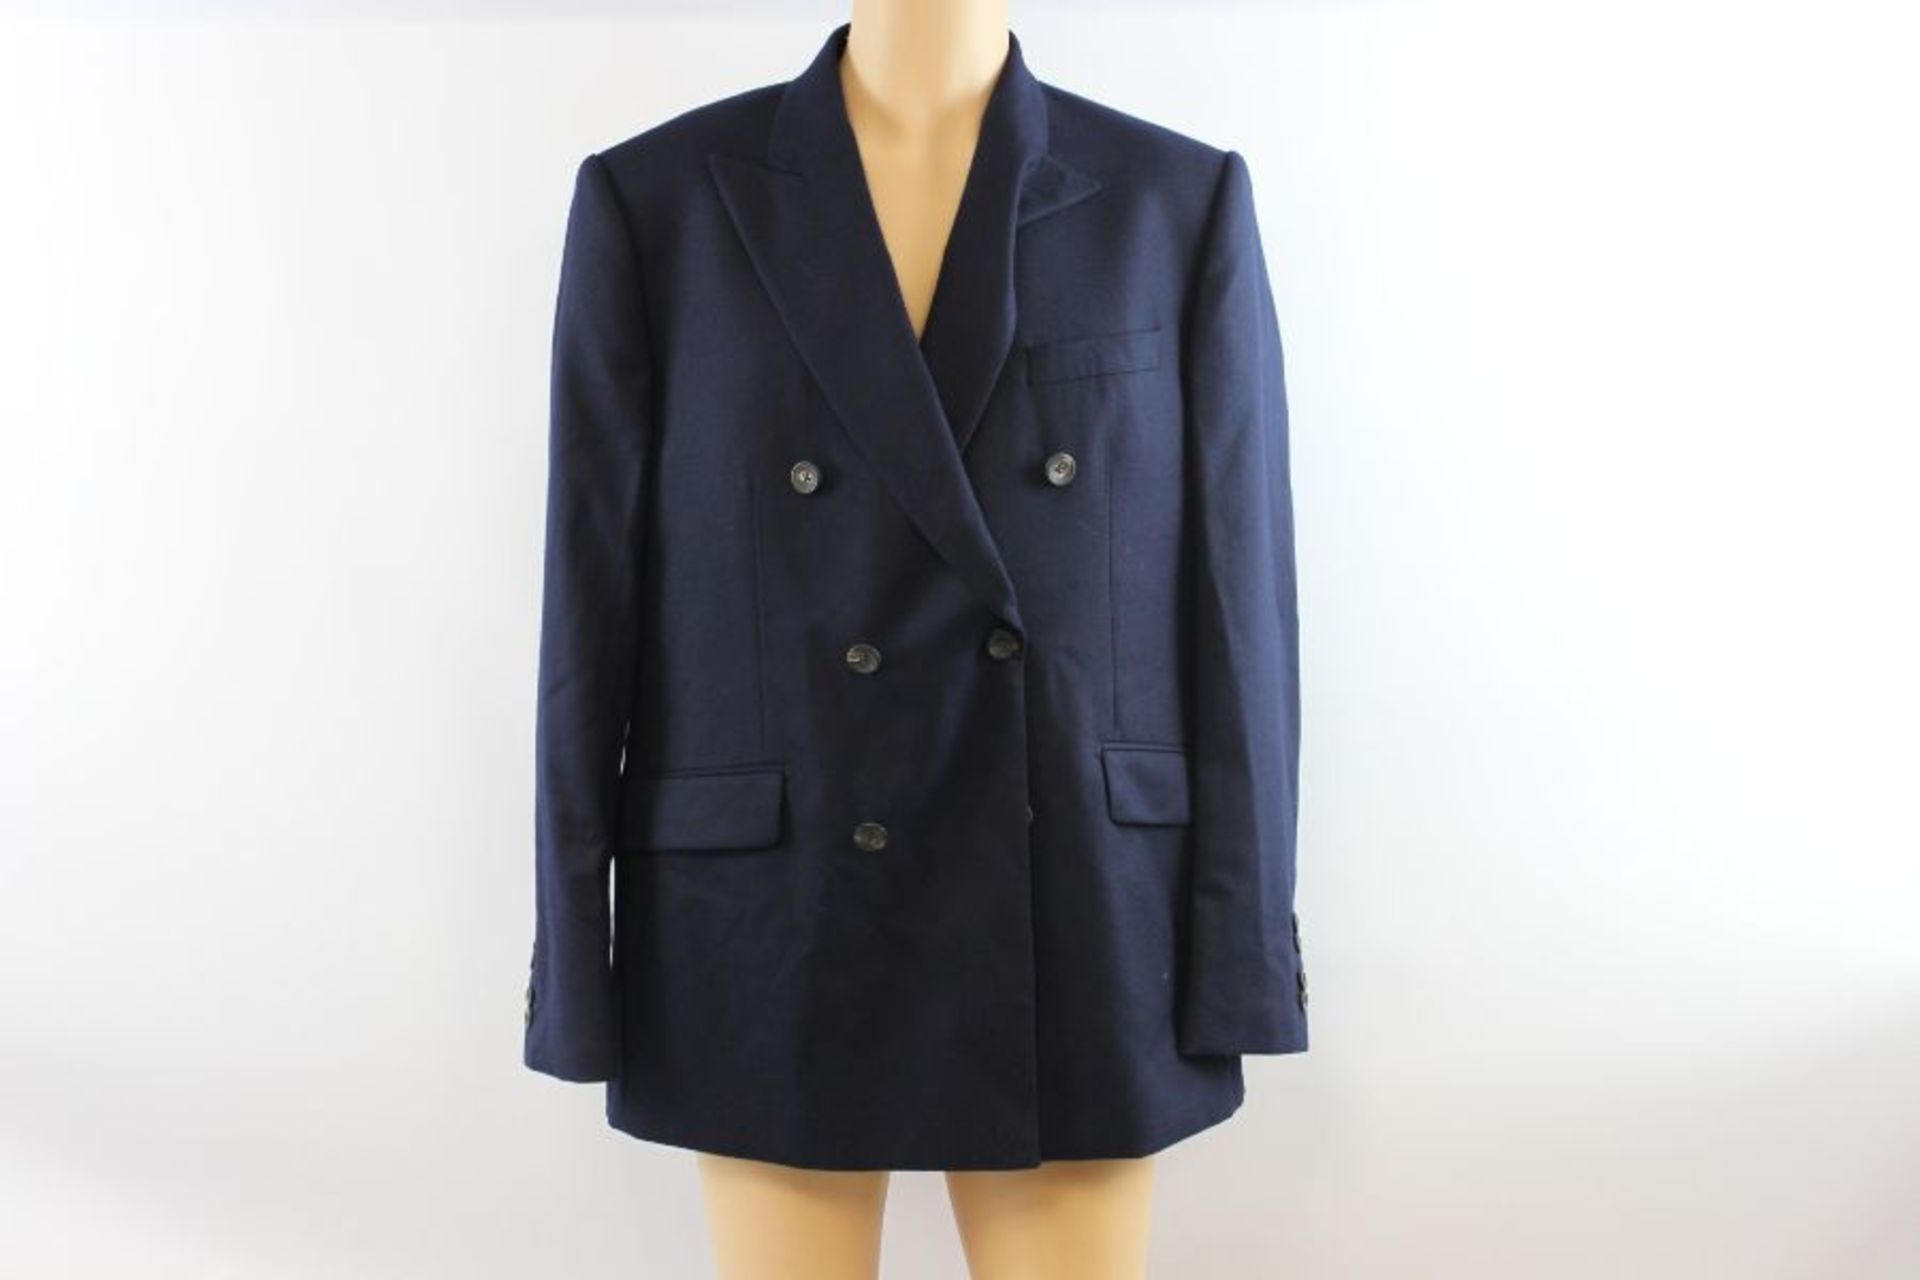 Hackett London Men's SR Plain Flannel Suit, Navy, Size 44 - Image 5 of 6